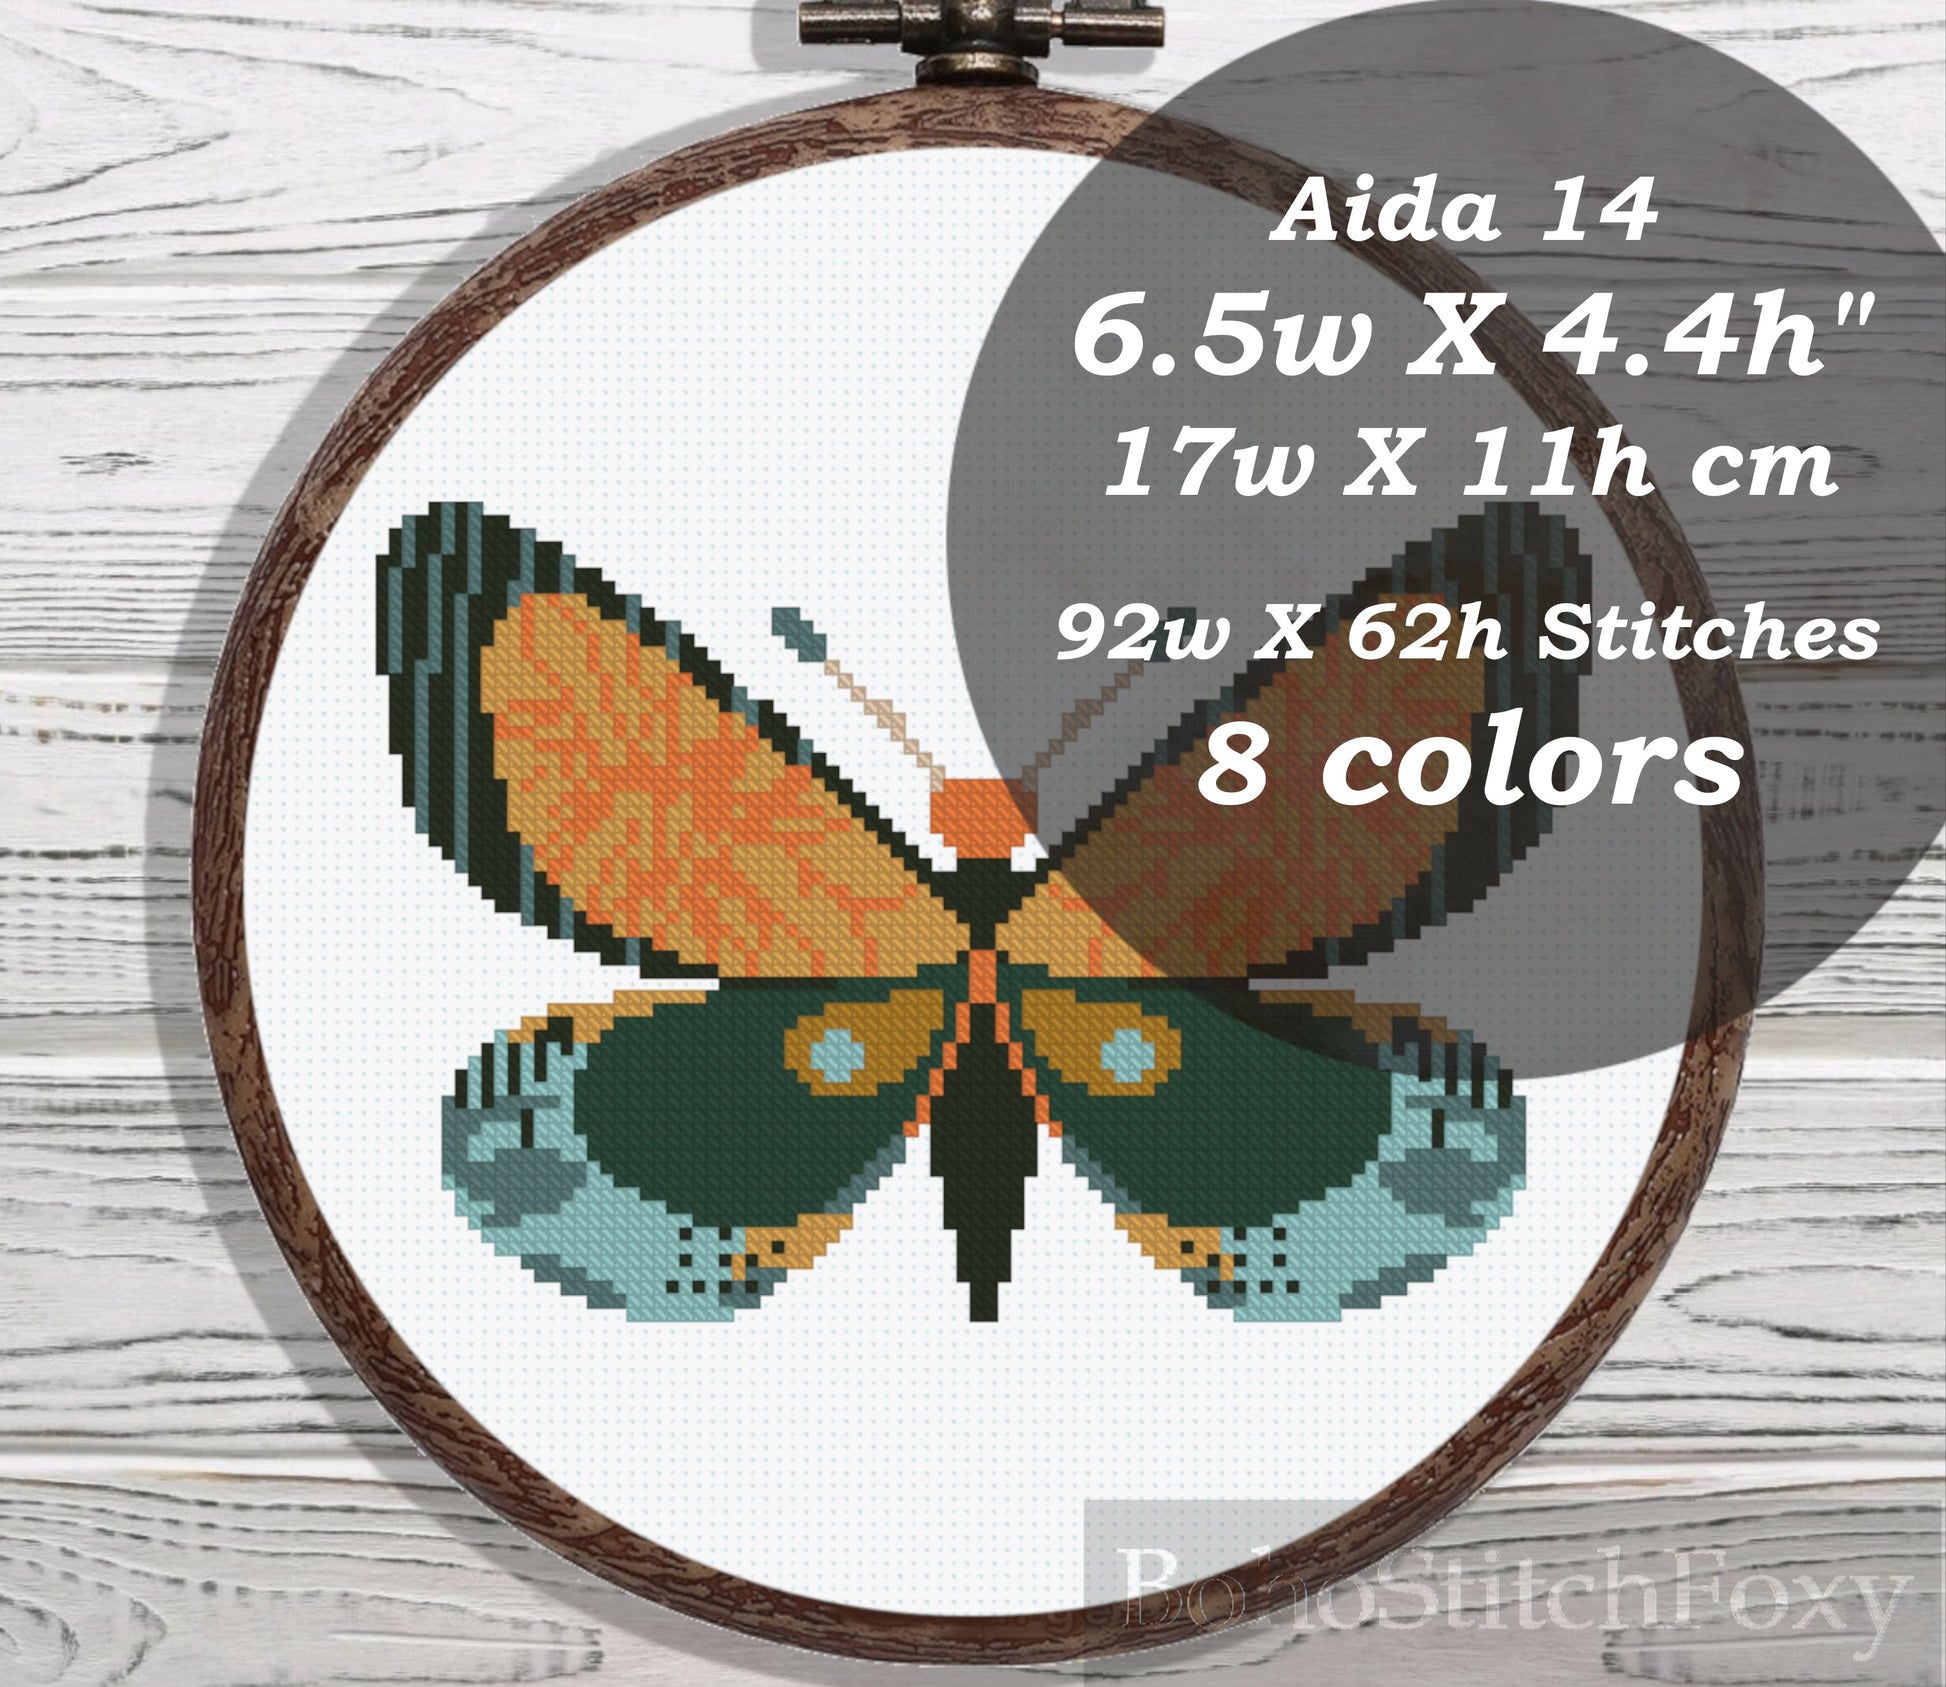 Boho butterfly cross stitch pattern